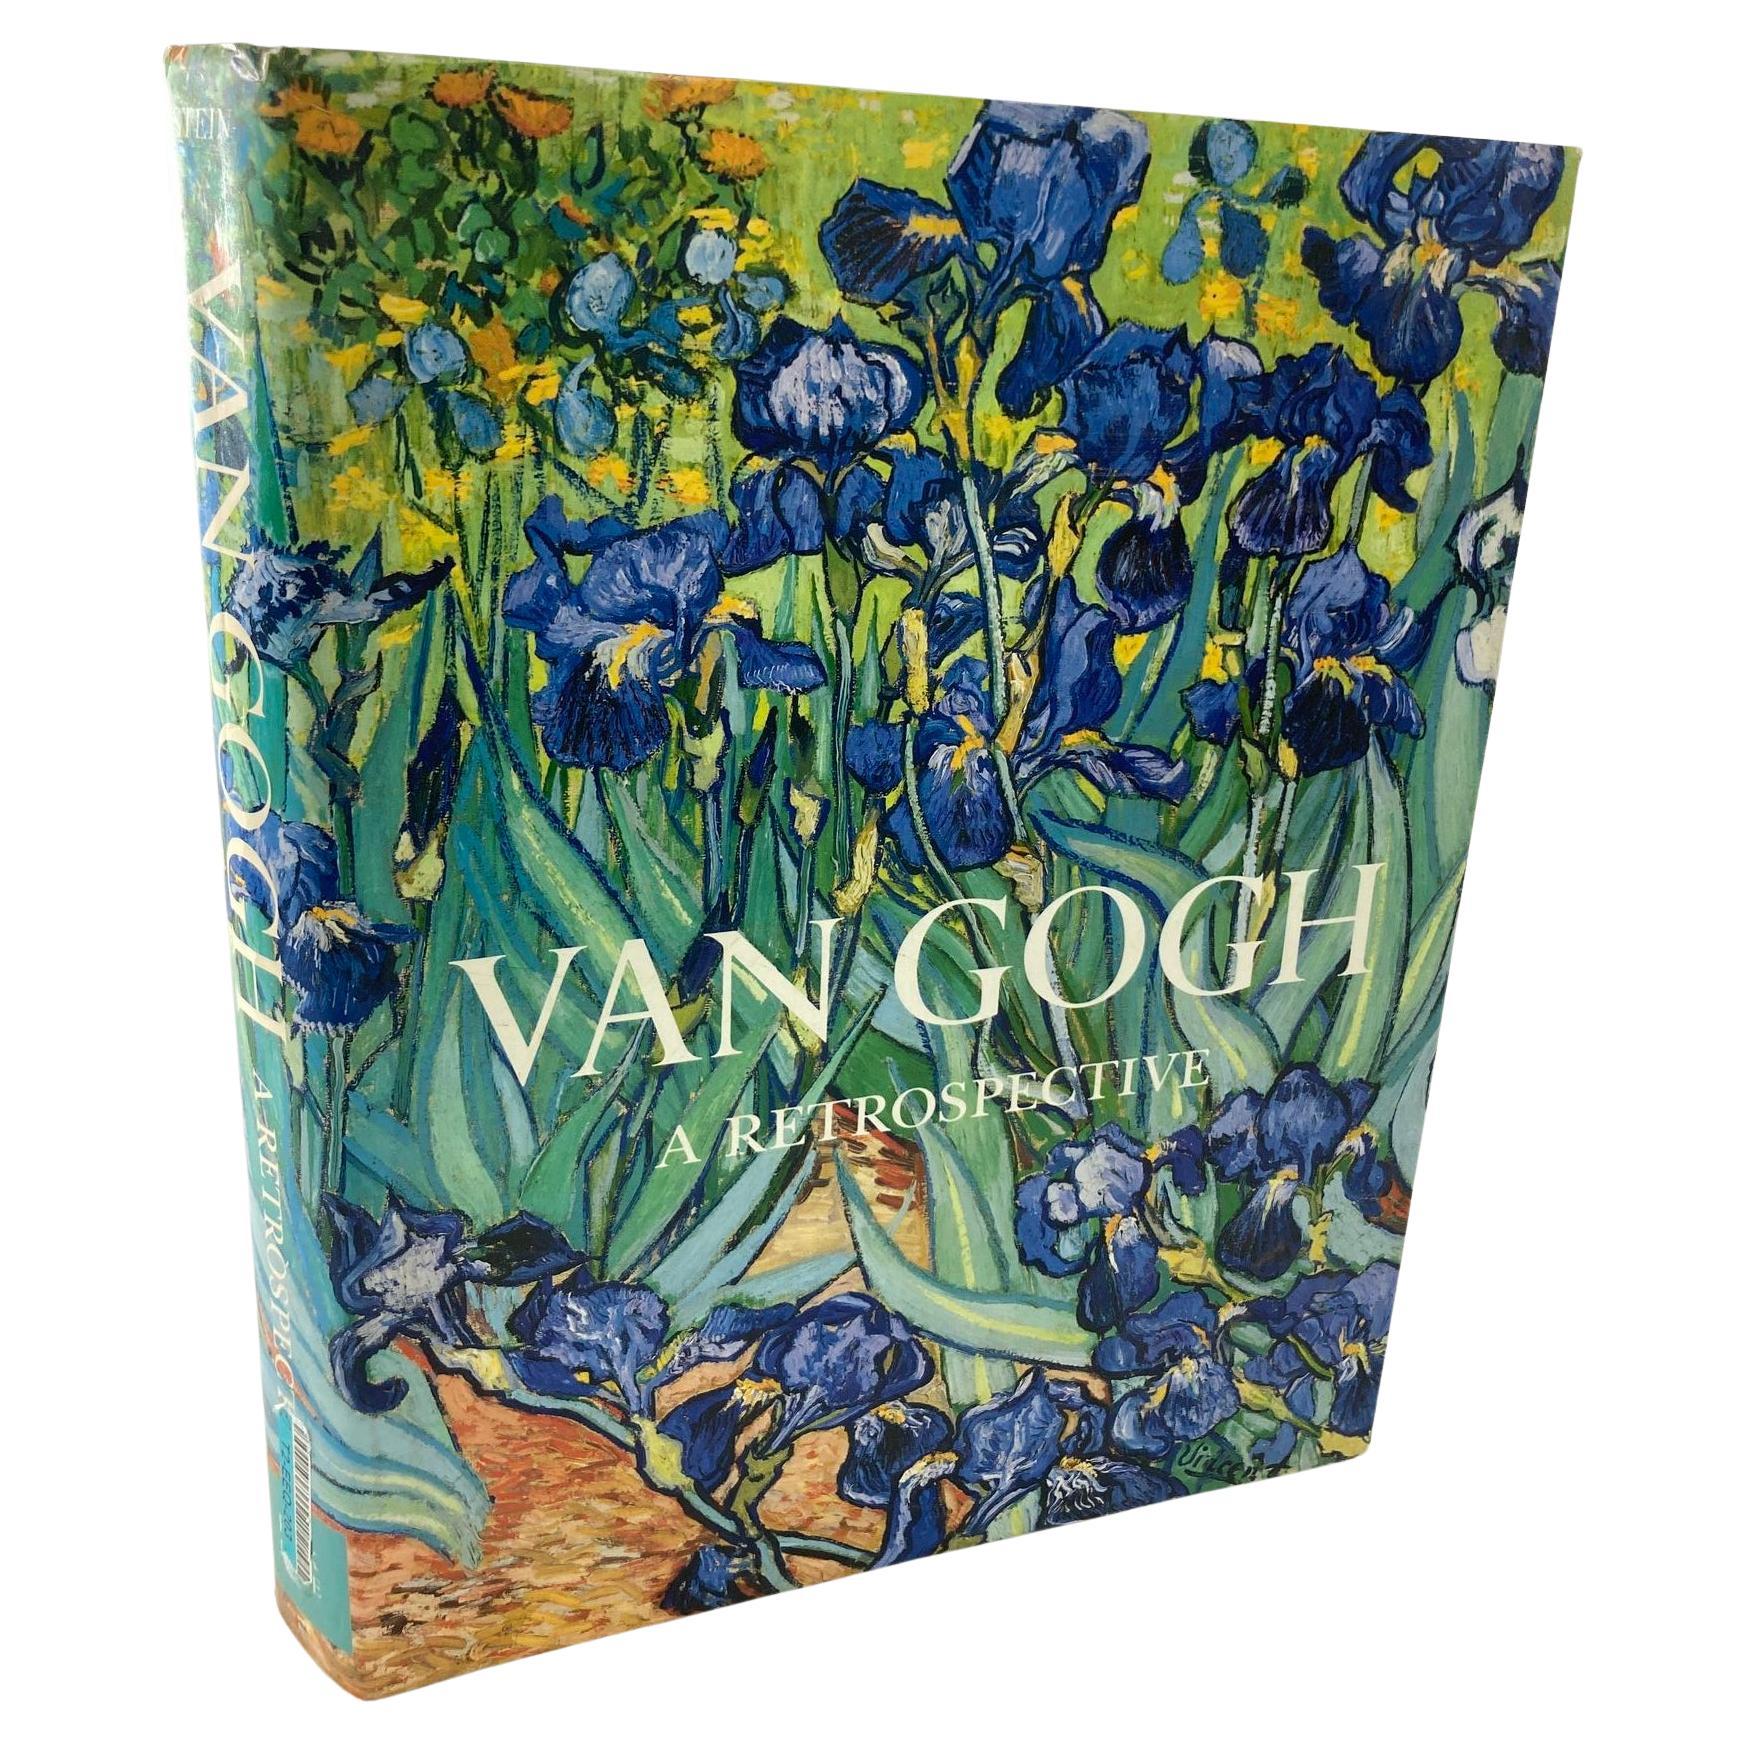 Van Gogh a Retrospective 1986, 1ère édition en vente